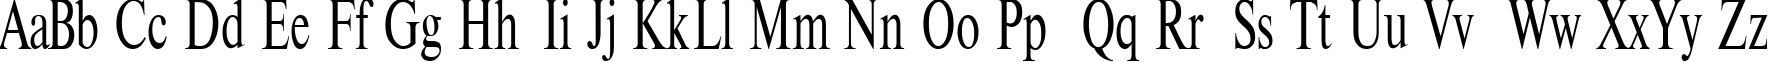 Пример написания английского алфавита шрифтом TimesET 75